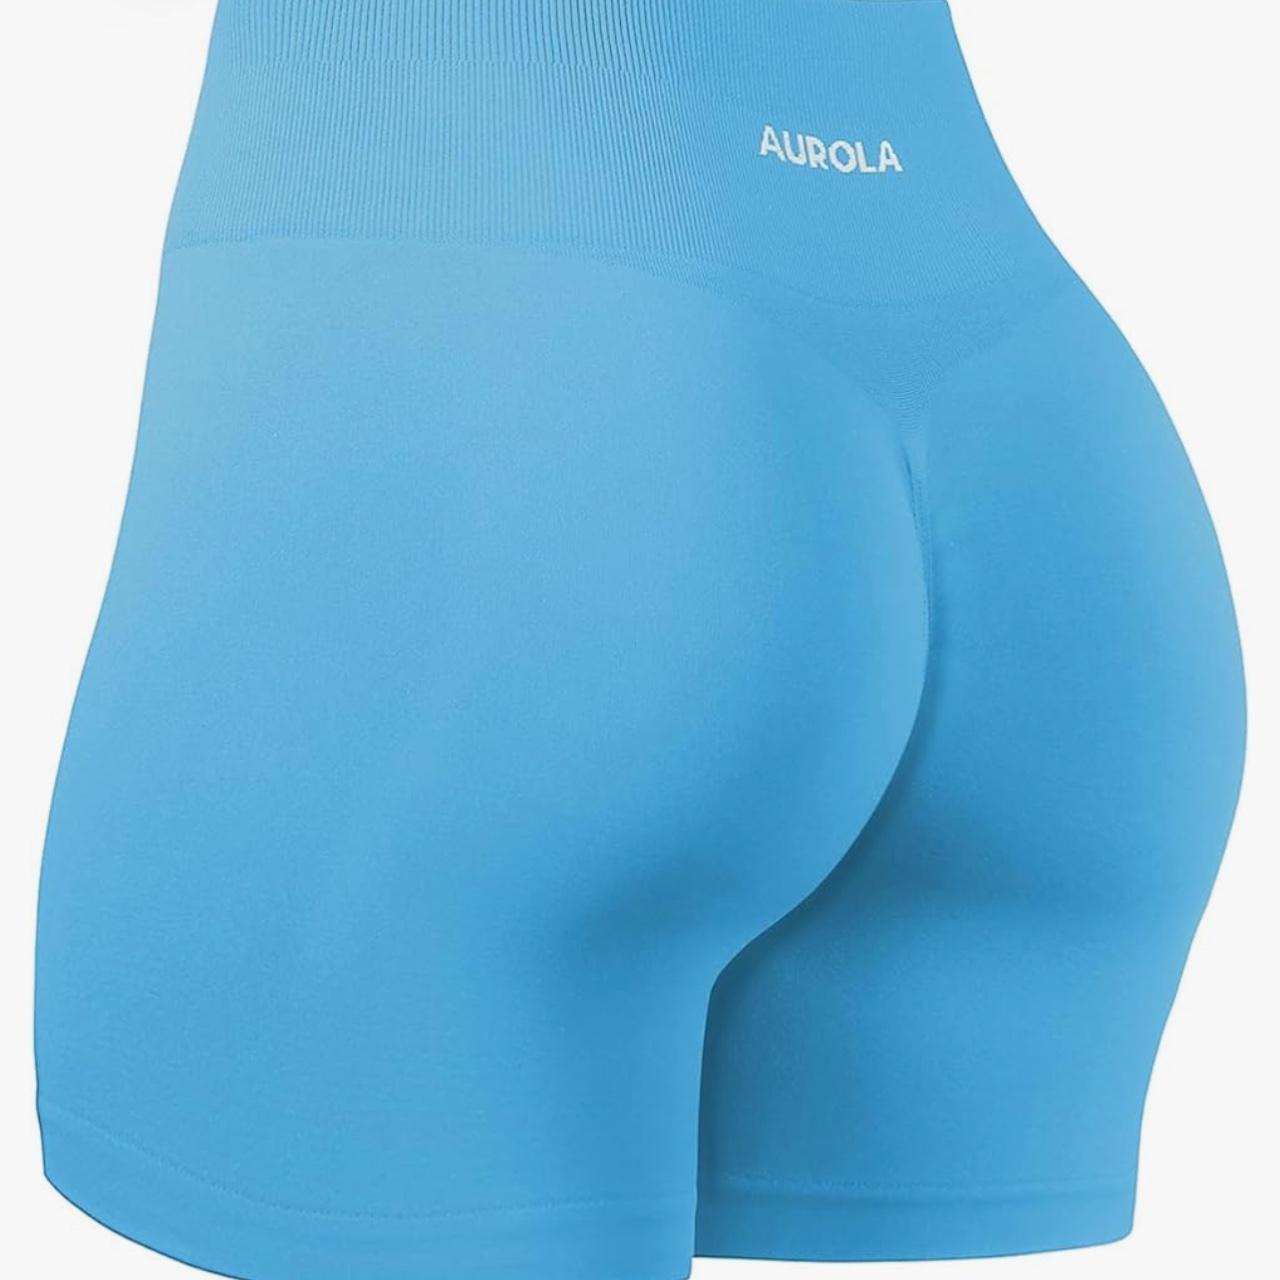 AUROLA Dream Collection Workout Shorts for Women Scrunch Seamless